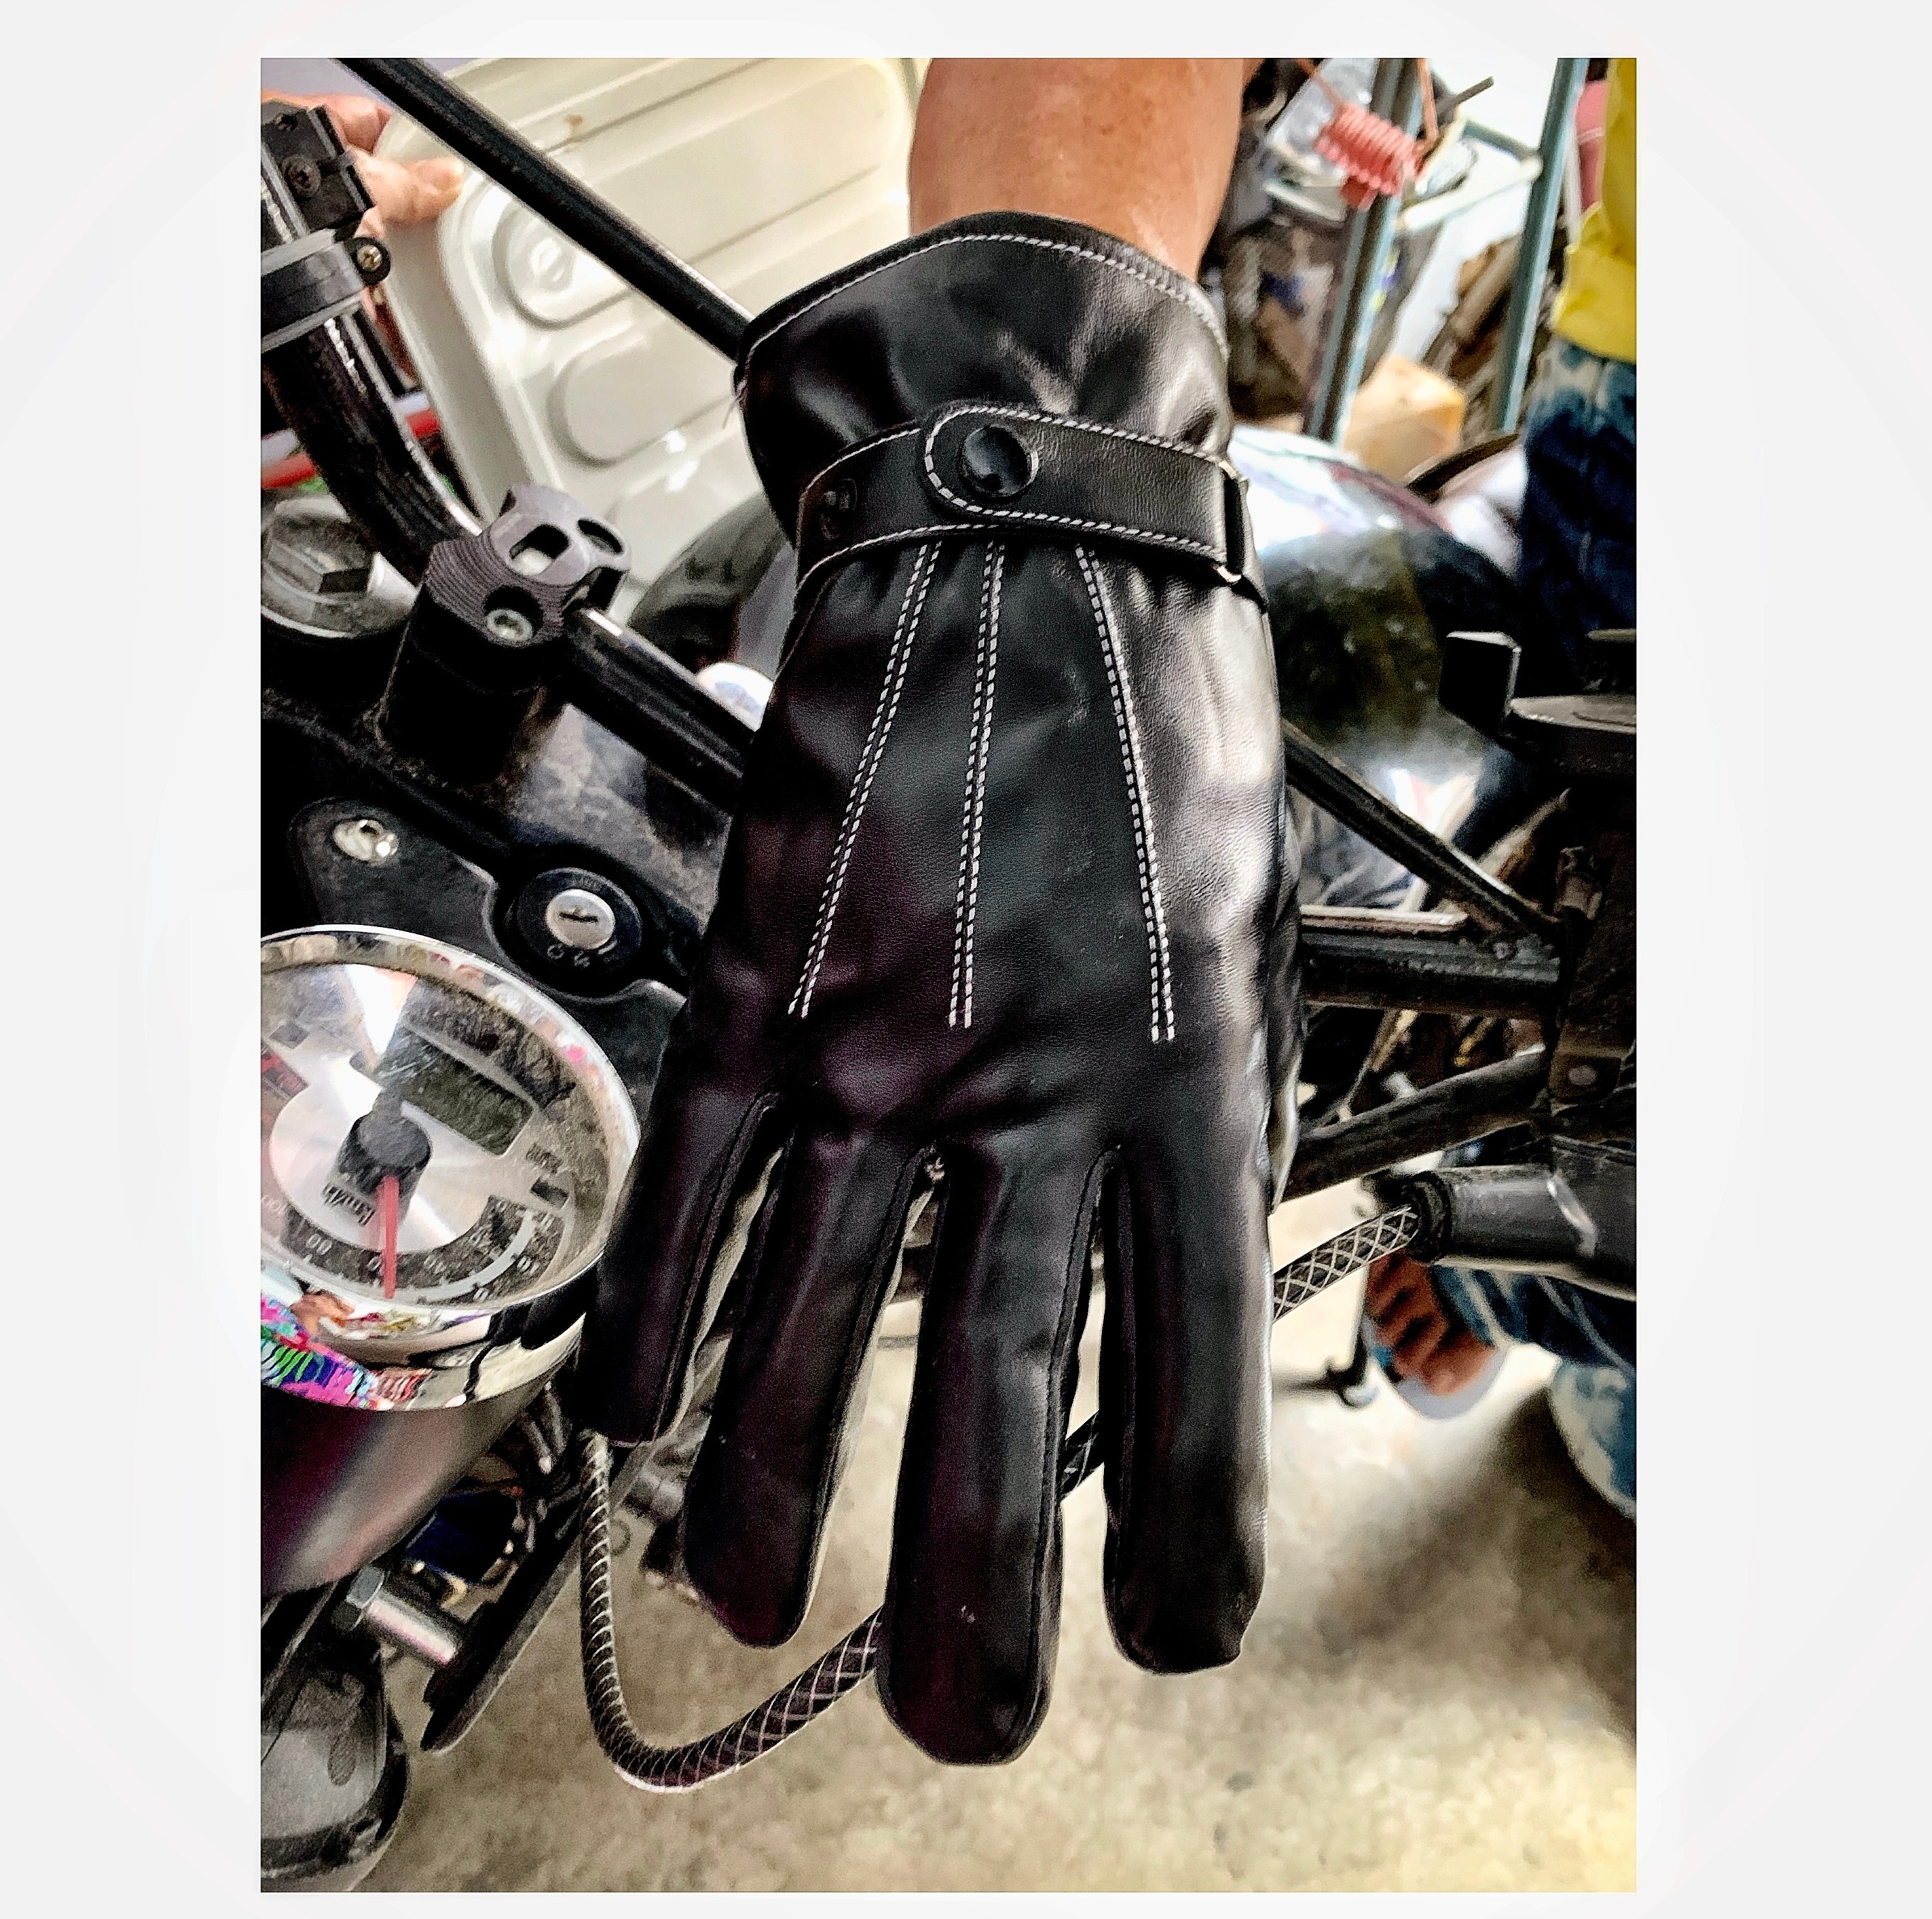 ถุงมือ ถุงมือหนัง ถุงมือมอไซ ถุงมือมอไซด์ วินเทจ ถุงมือหนัง สีดำ สำหรับขี่รถจักรยานยนต์